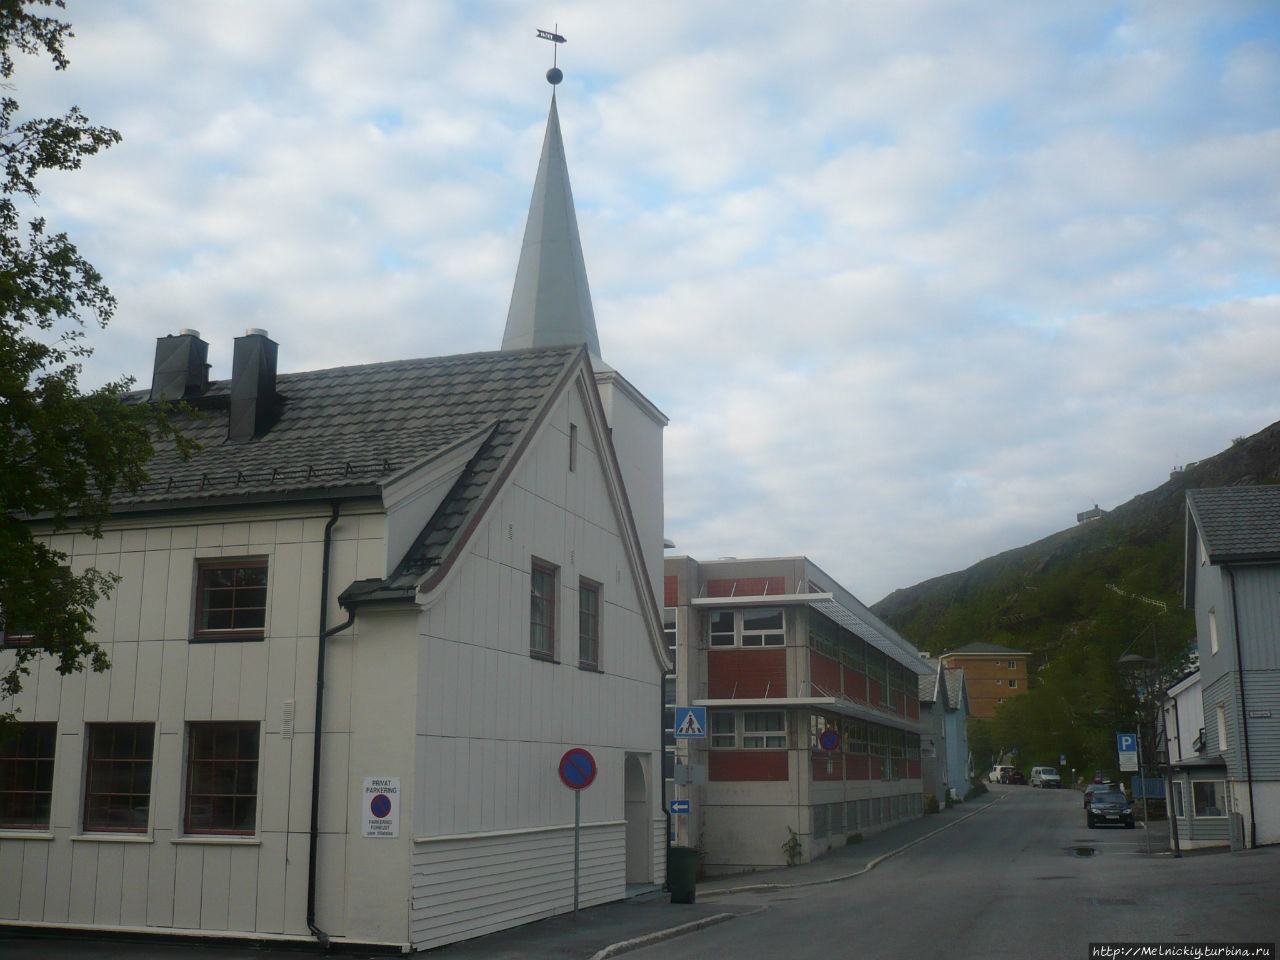 Методистская церковь Хаммерфест, Норвегия